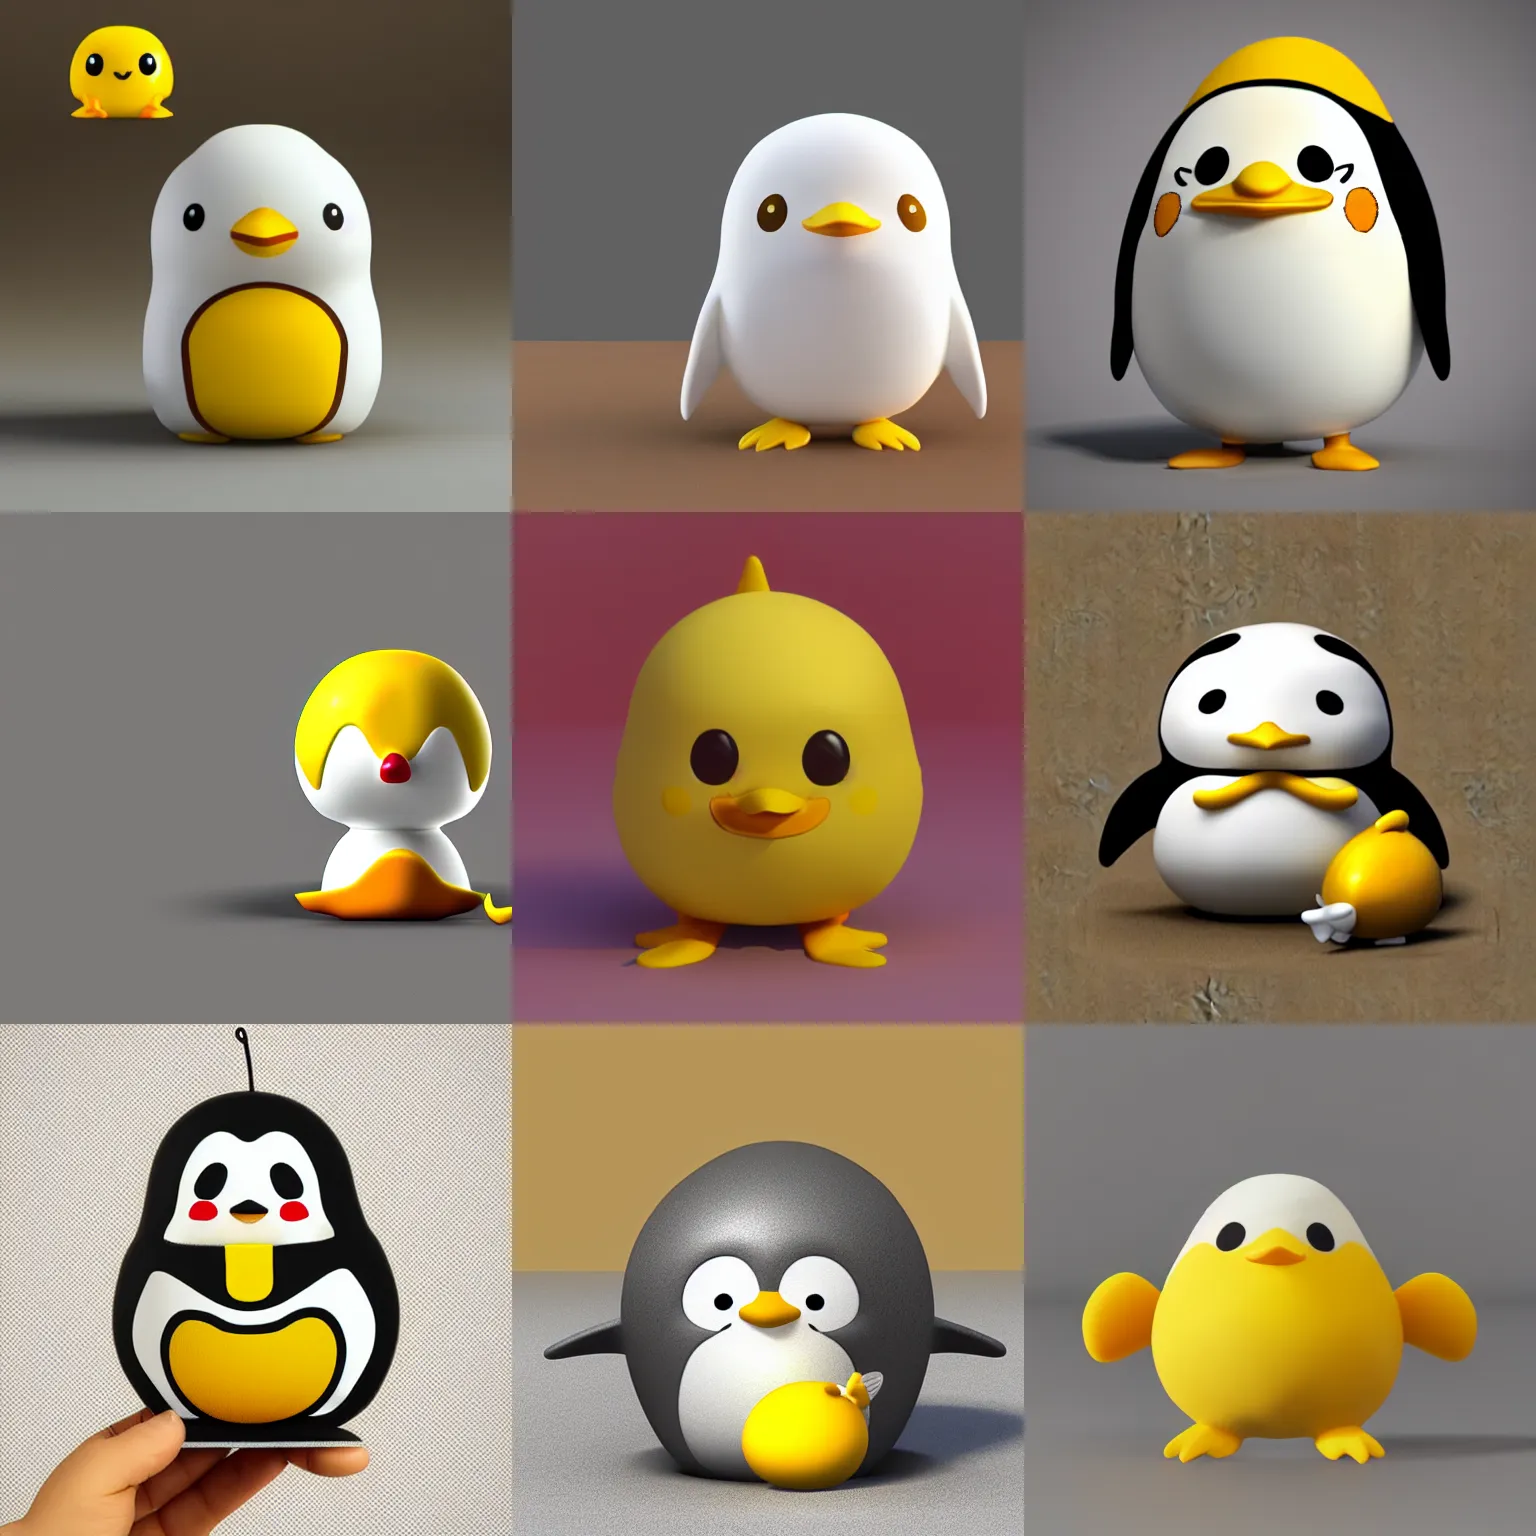 Prompt: cute 3d render of gudetama penguin by sanrio